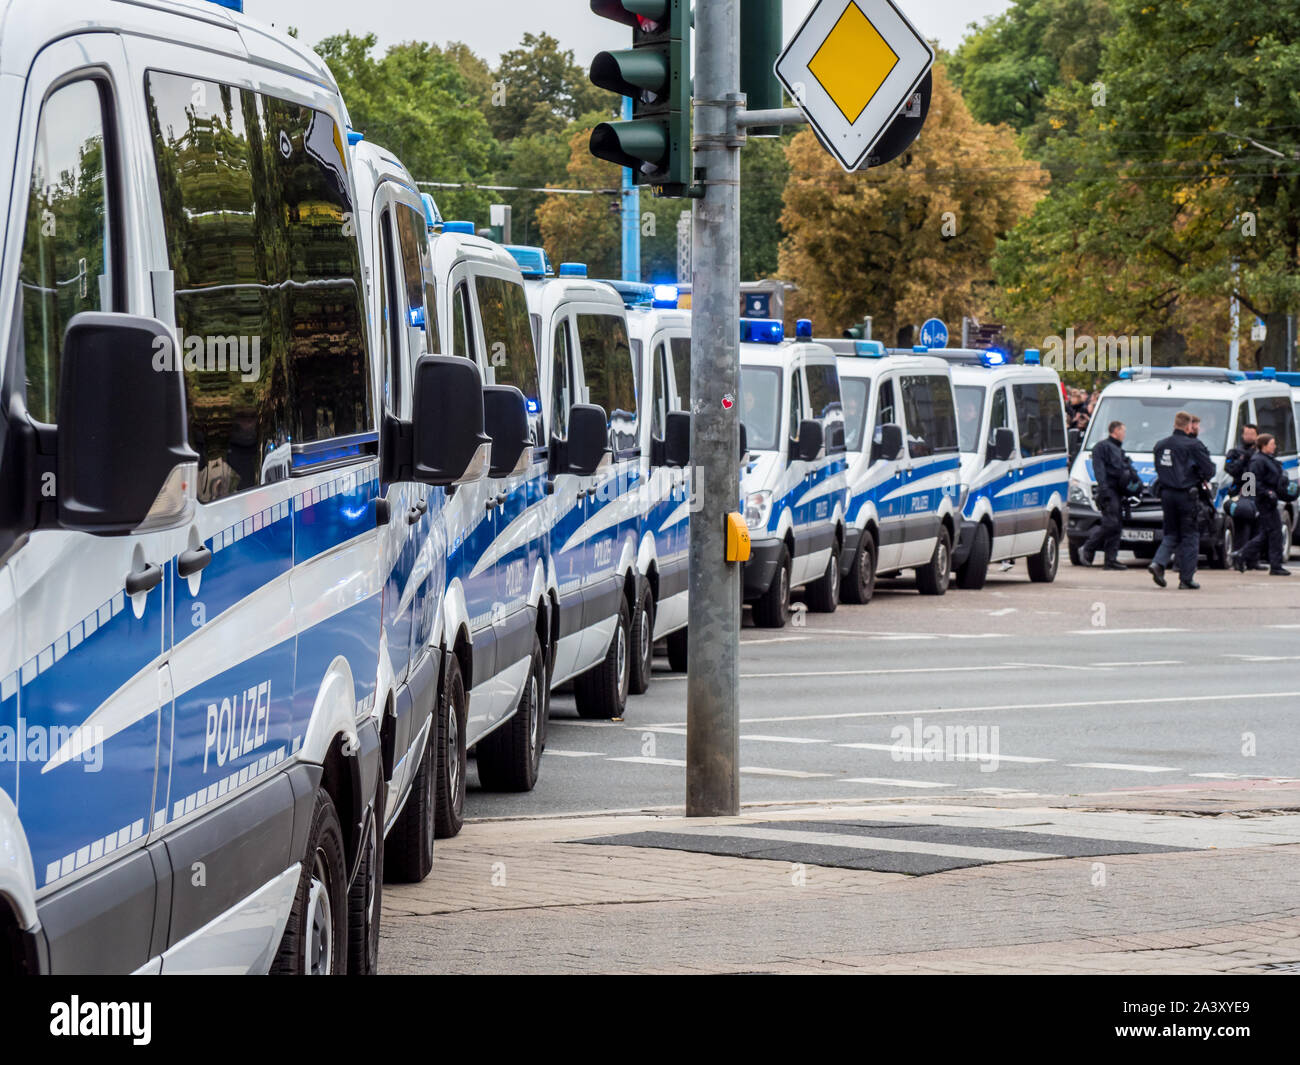 Police blockade in Germany Stock Photo